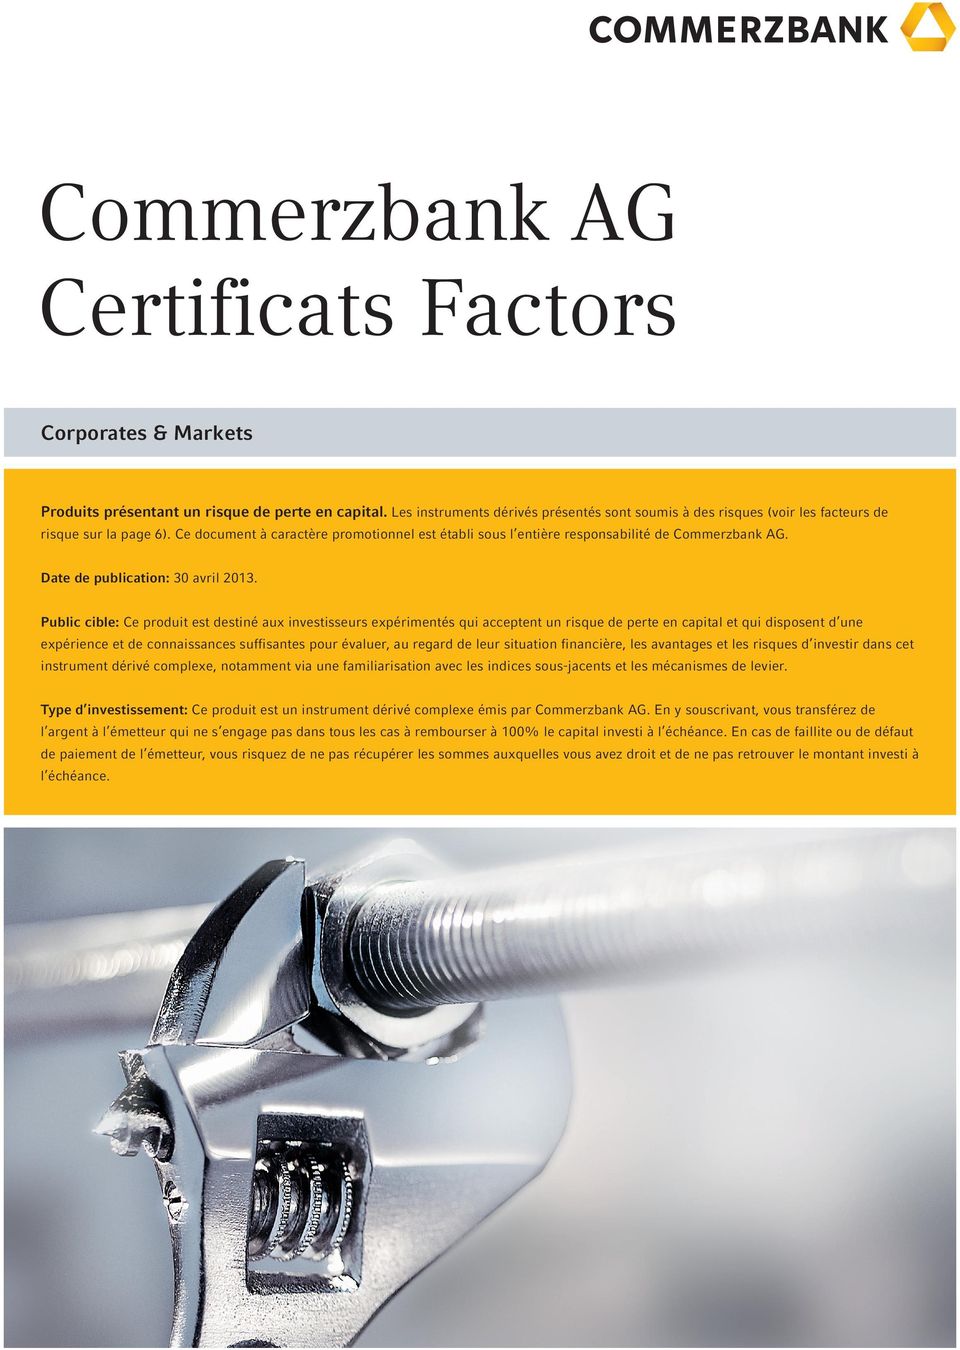 Ce document à caractère promotionnel est établi sous l entière responsabilité de Commerzbank AG. Date de publication: 30 avril 2013.